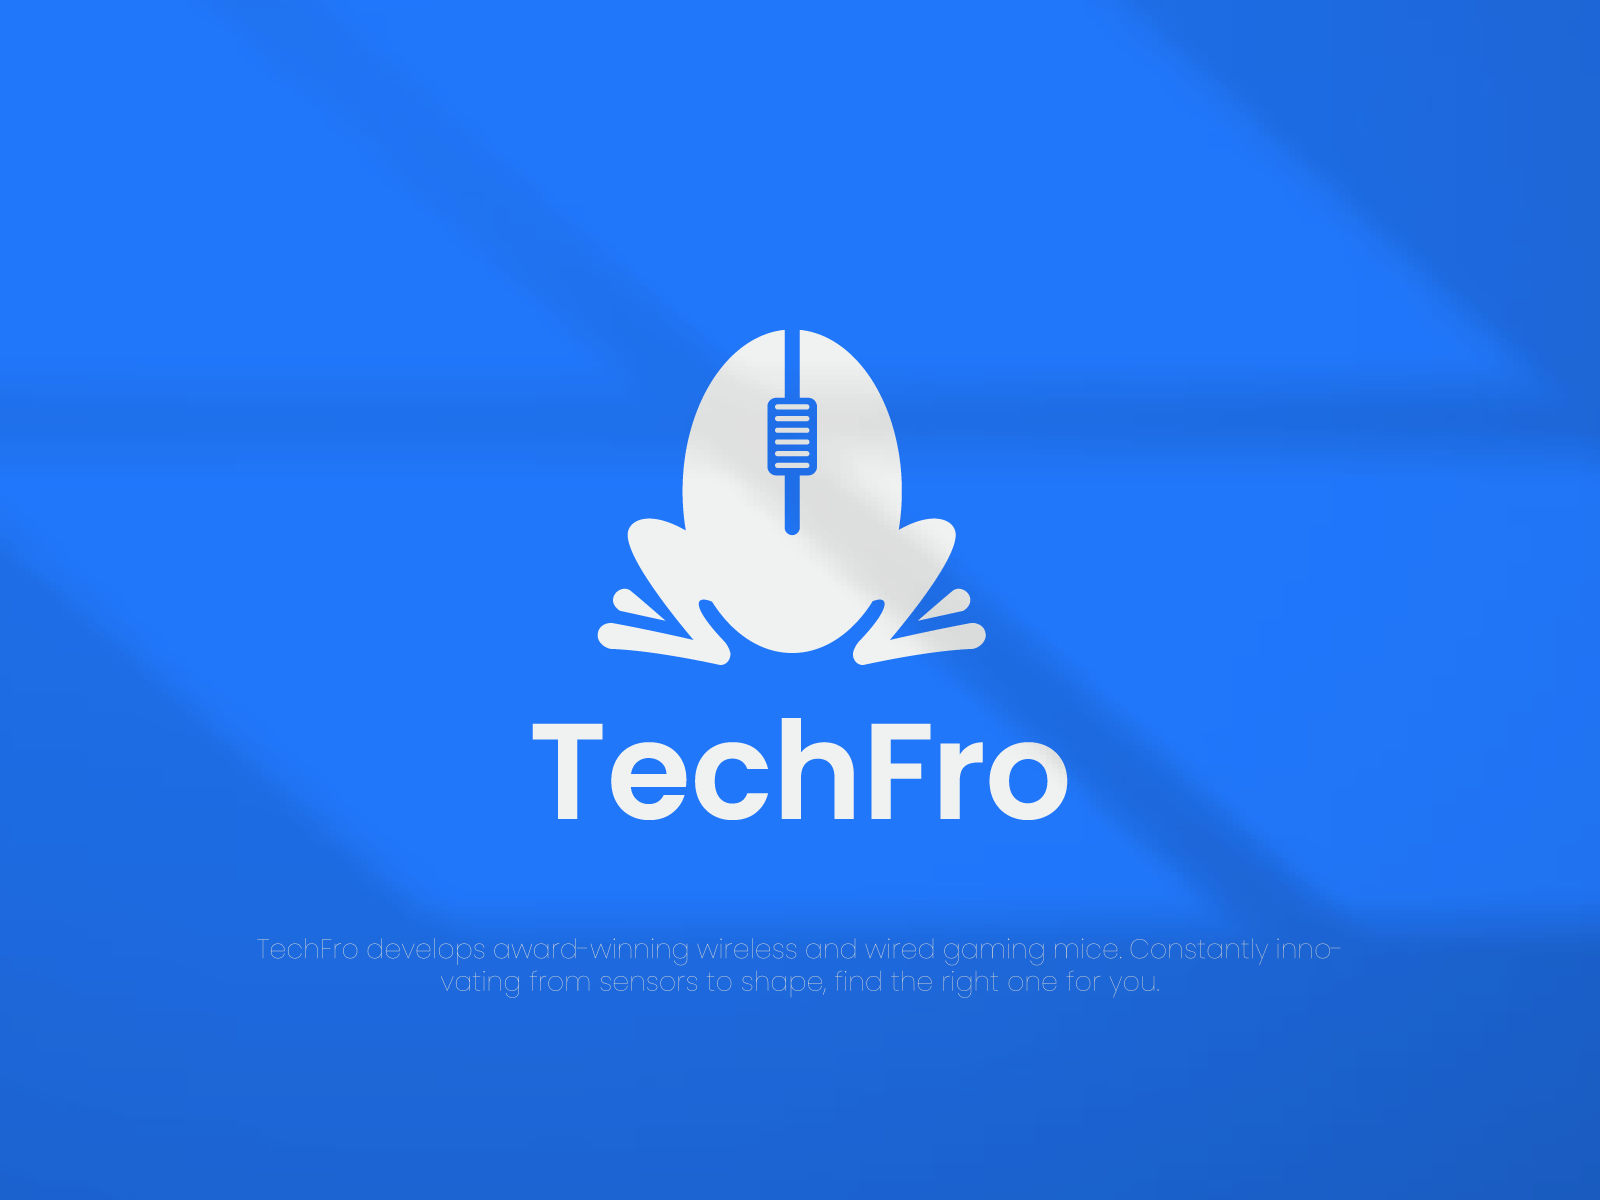 Mouse brand logo , techfrog logo concept.